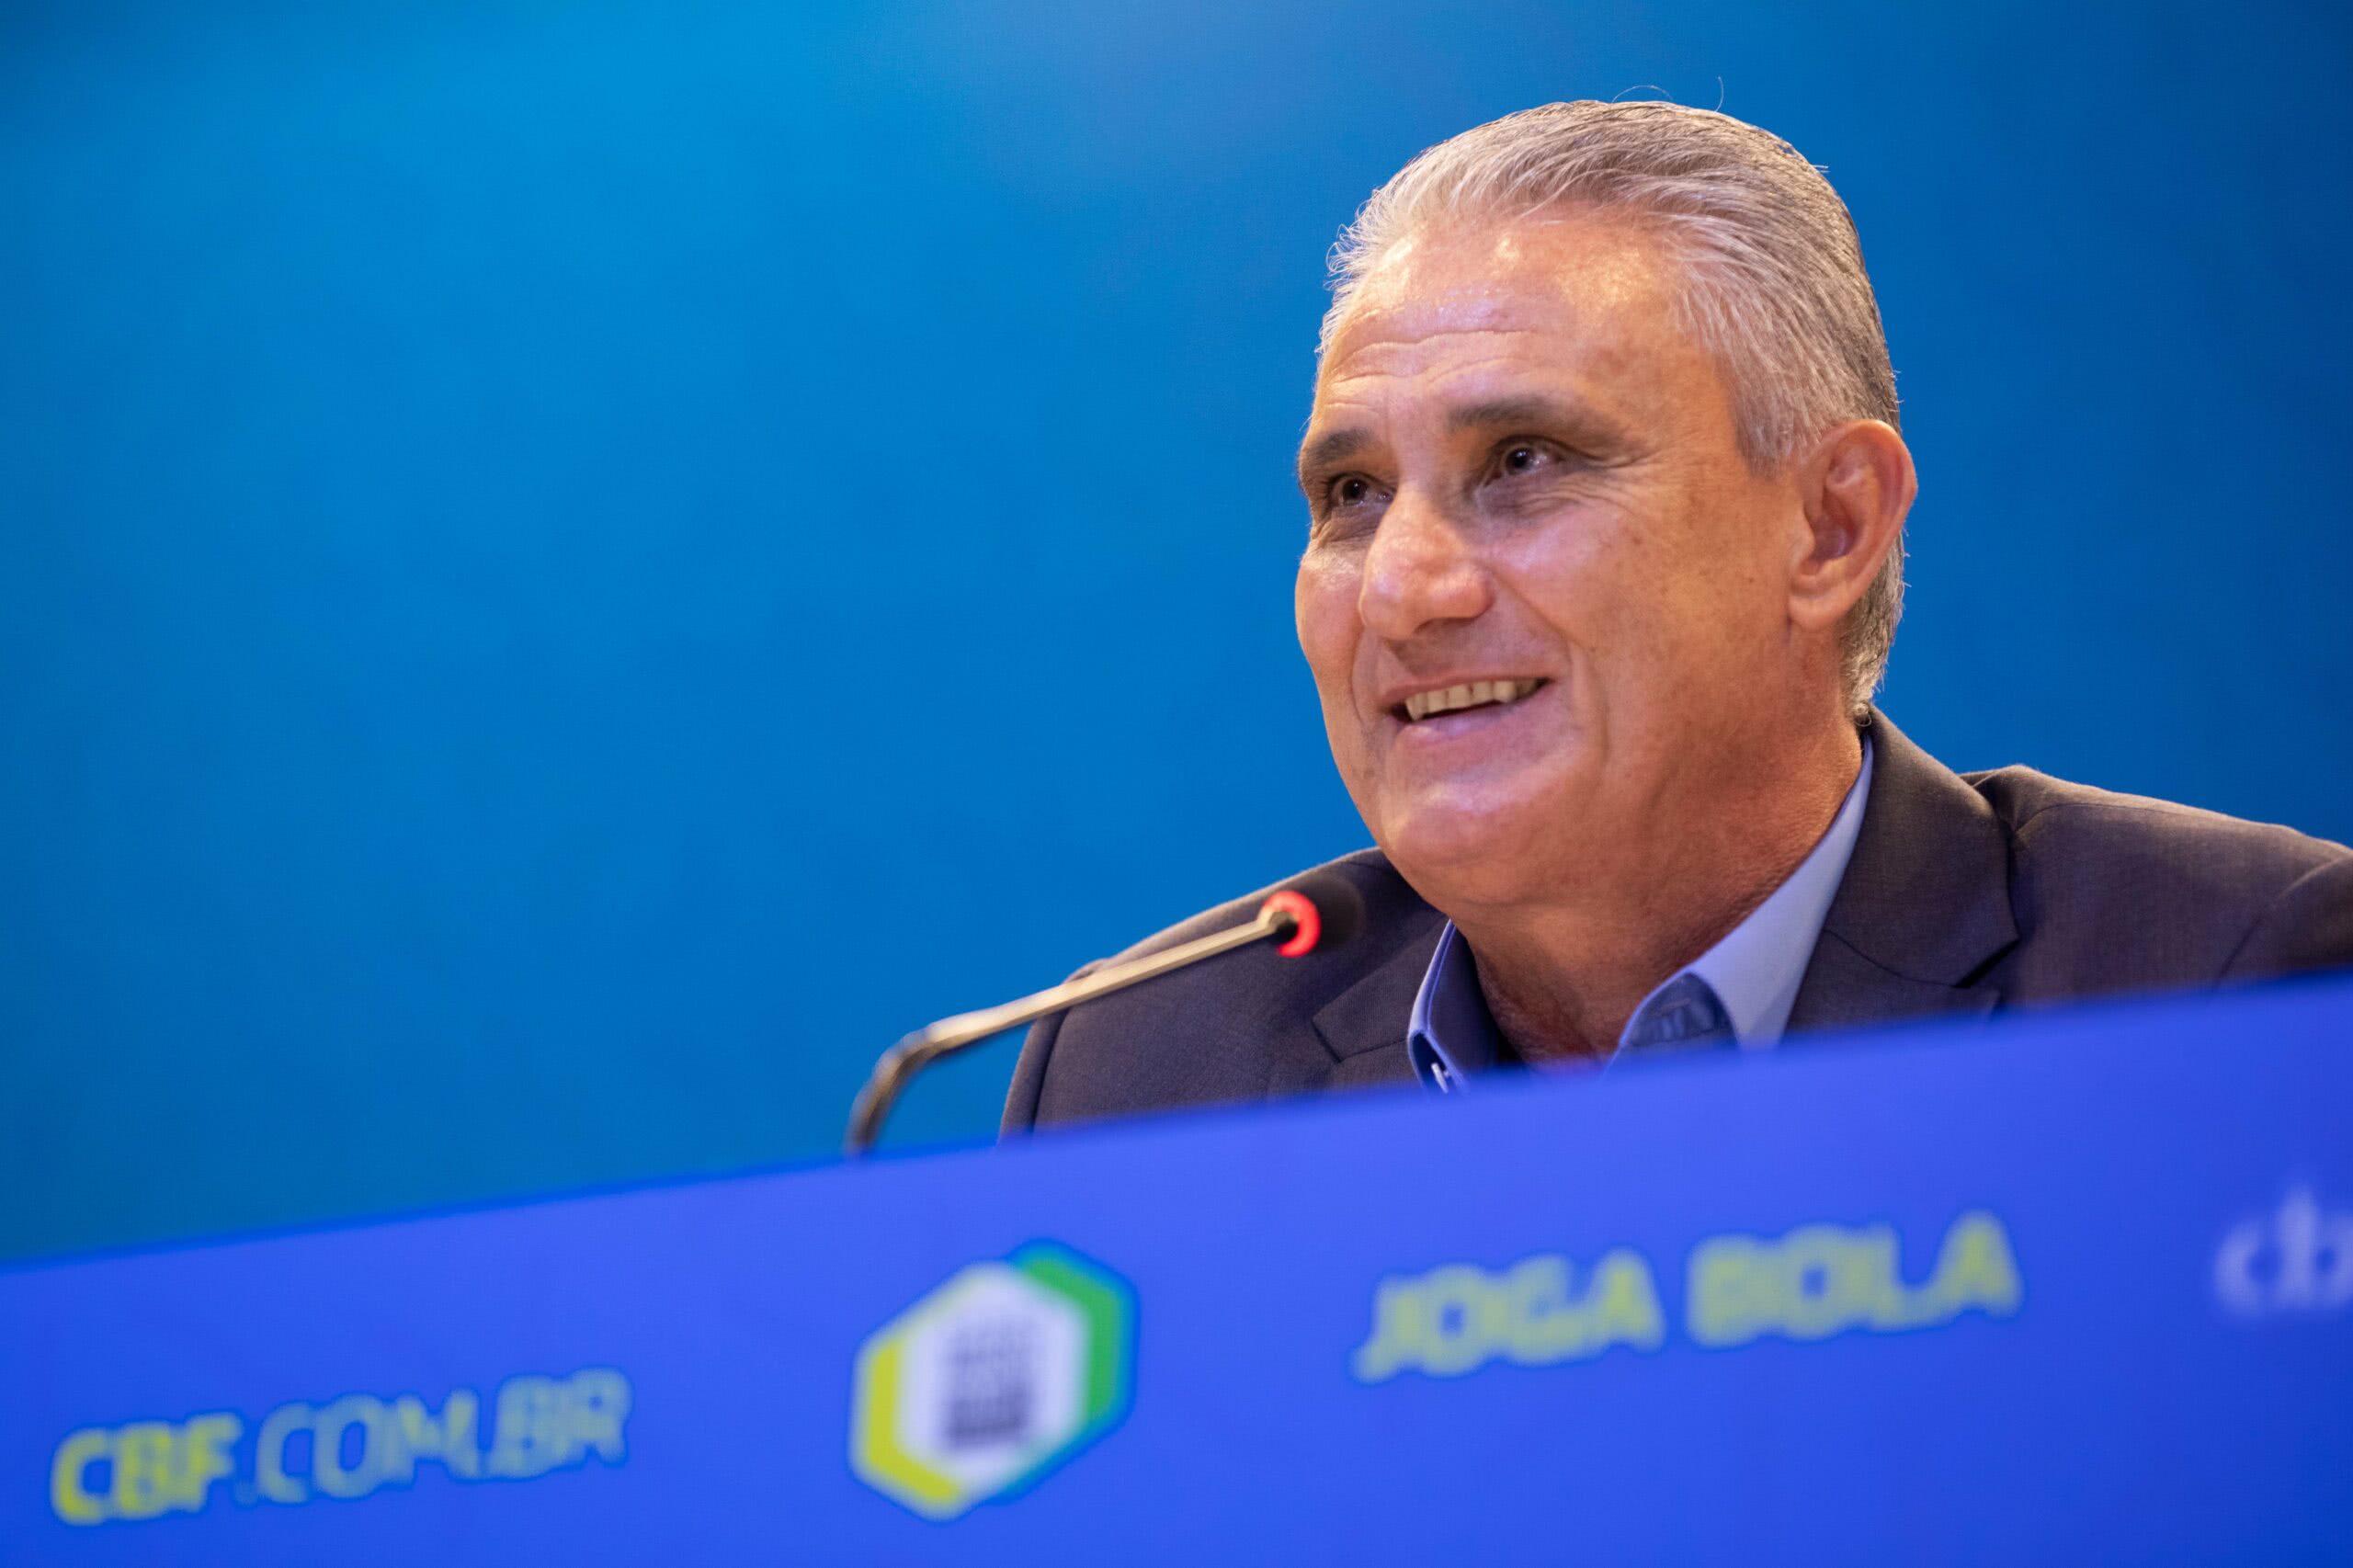 Seleção Brasileira: Confira a lista dos convocados para as eliminatórias